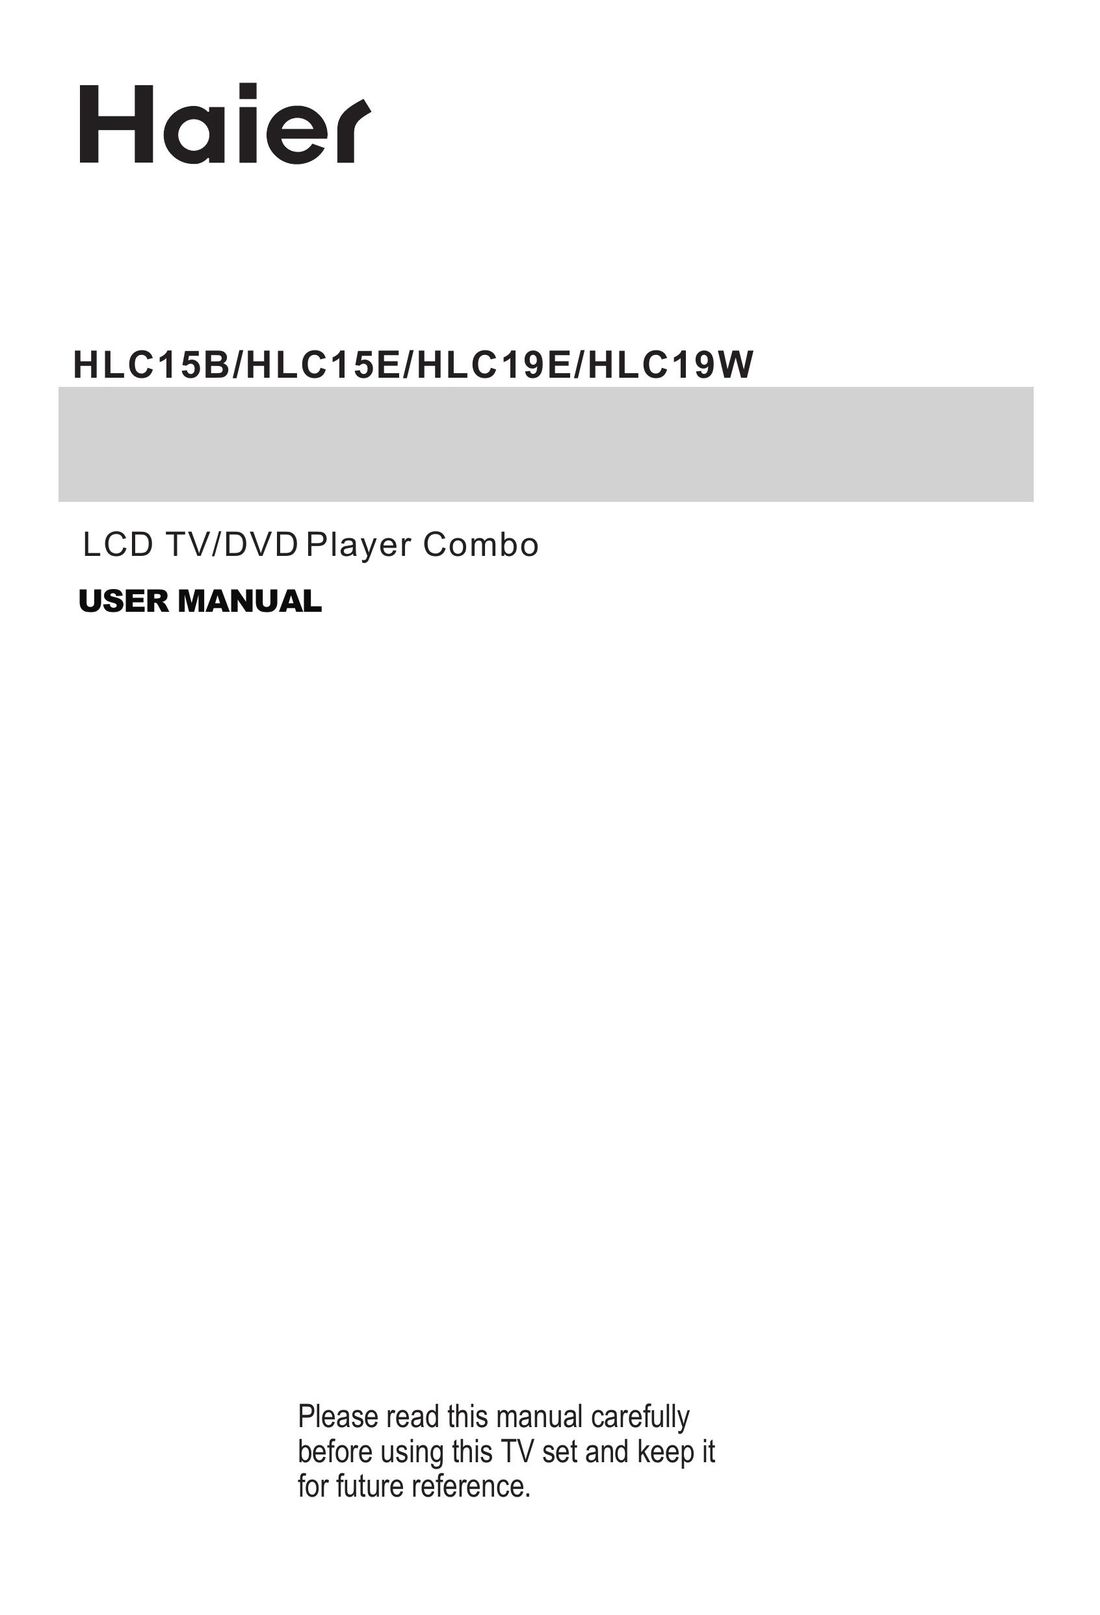 Haier HLC15B TV DVD Combo User Manual